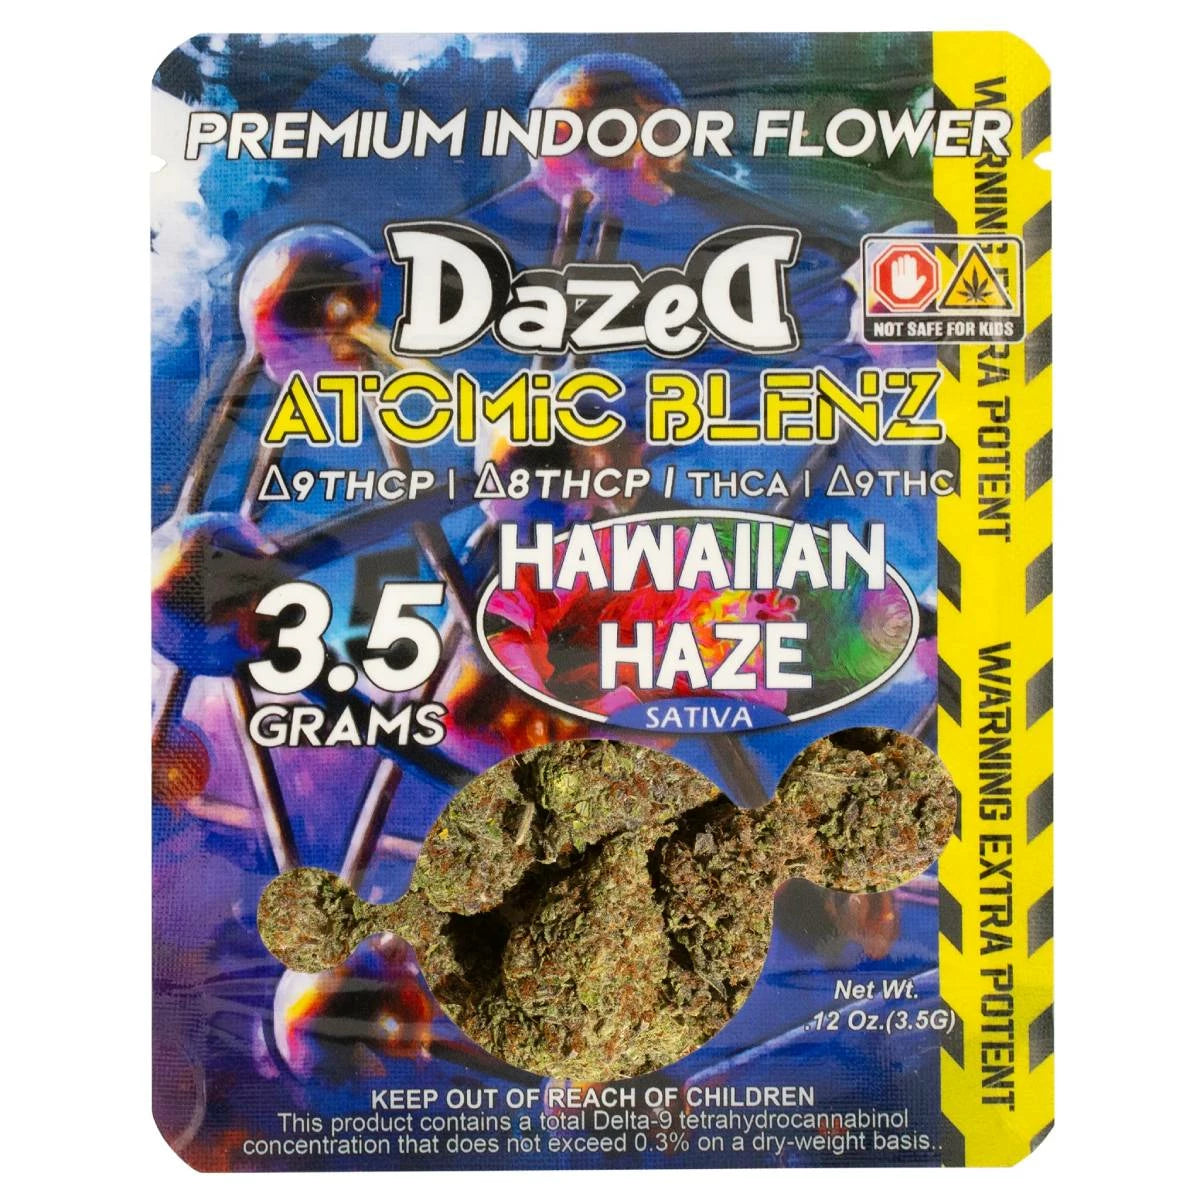 Dazed8 Atomic Blenz Premium Indoor Flowers 3.5g Best Sales Price - CBD